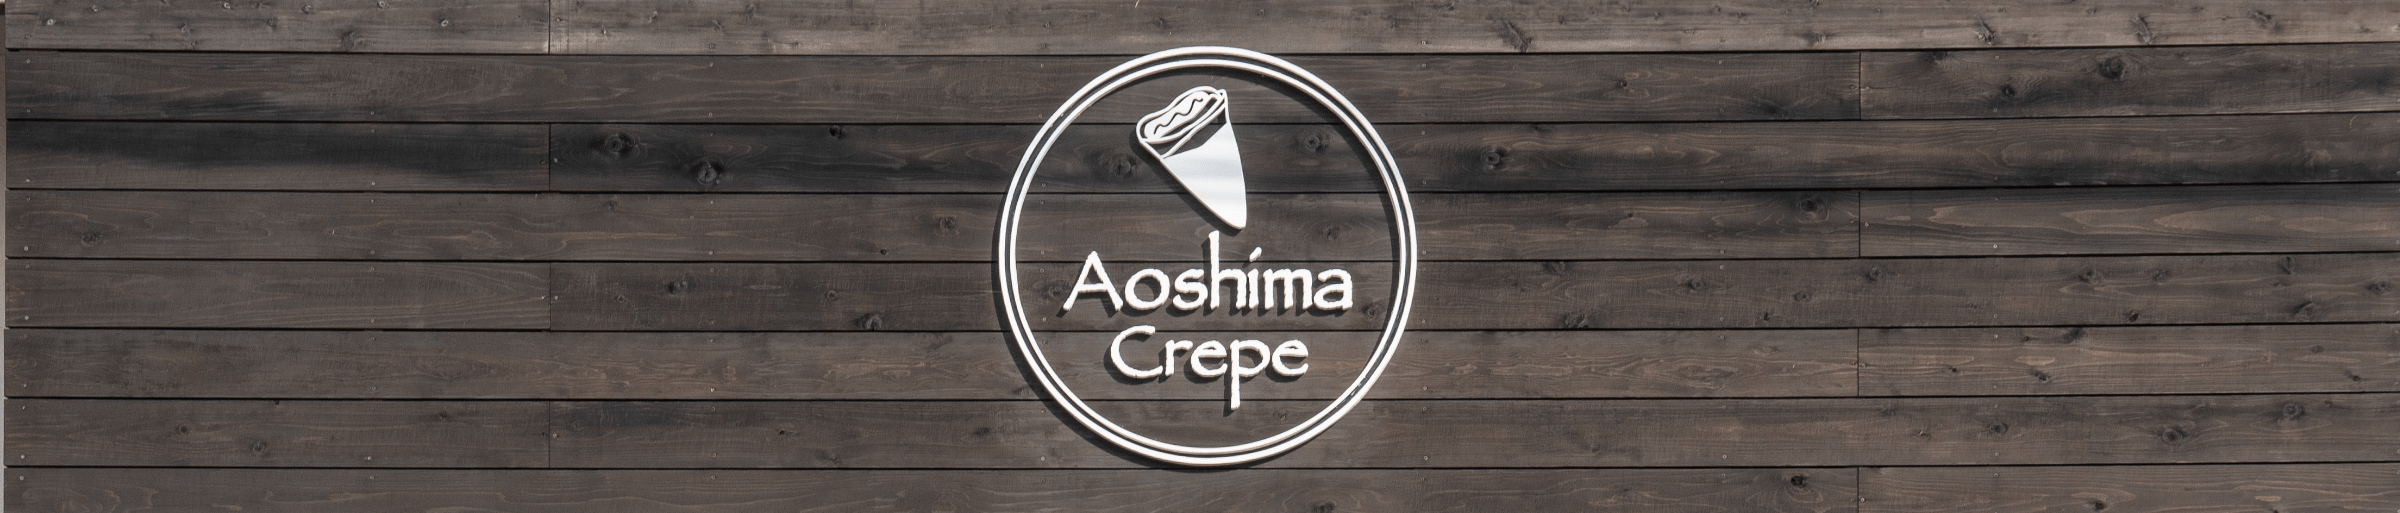 Aoshima Crepe Shop logo